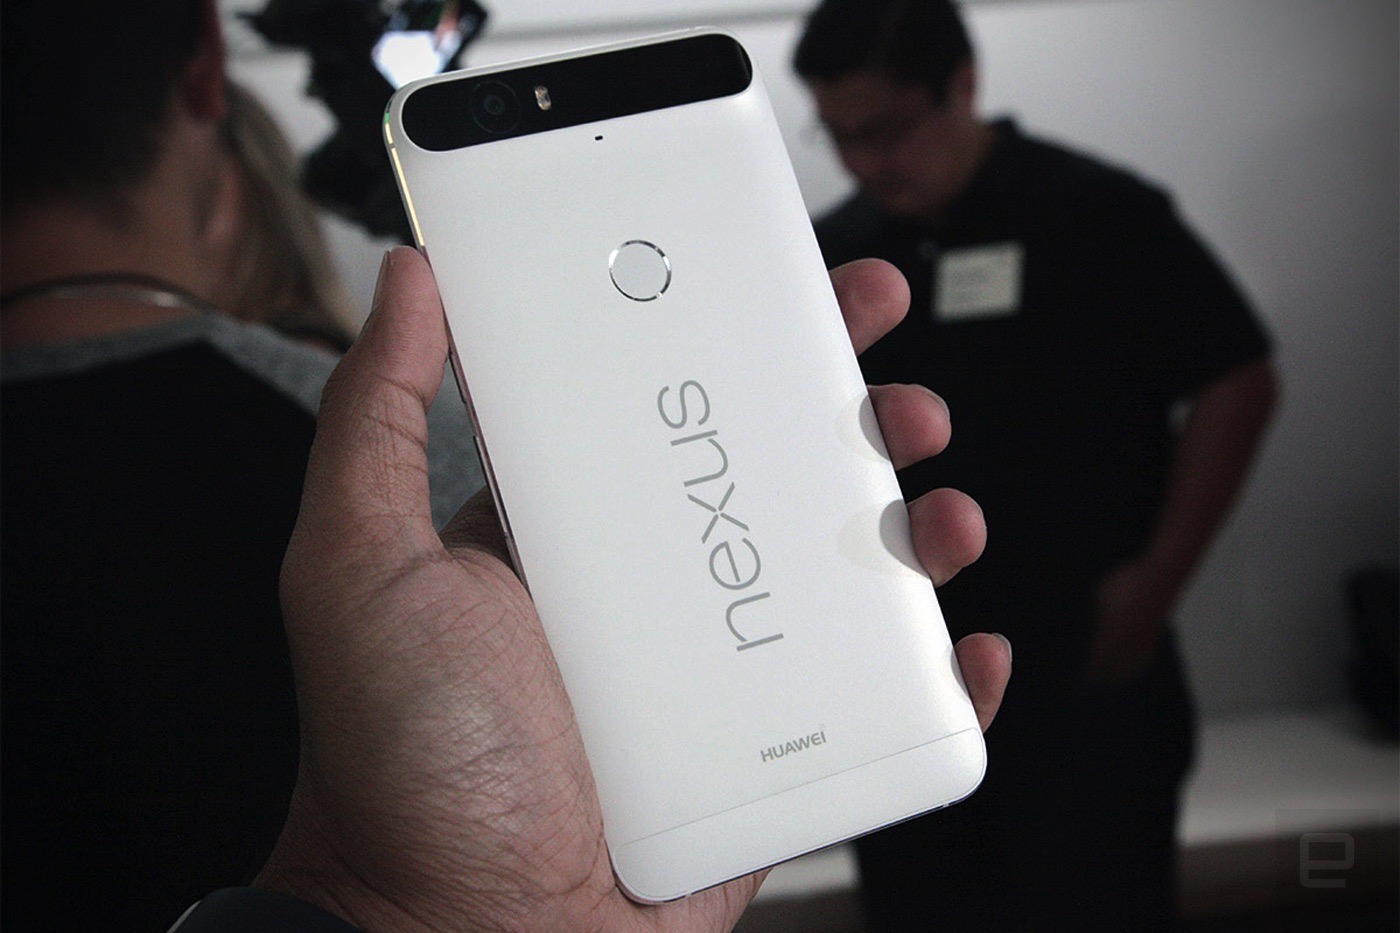 未来的 Nexus 产品可能会变得更加 Google